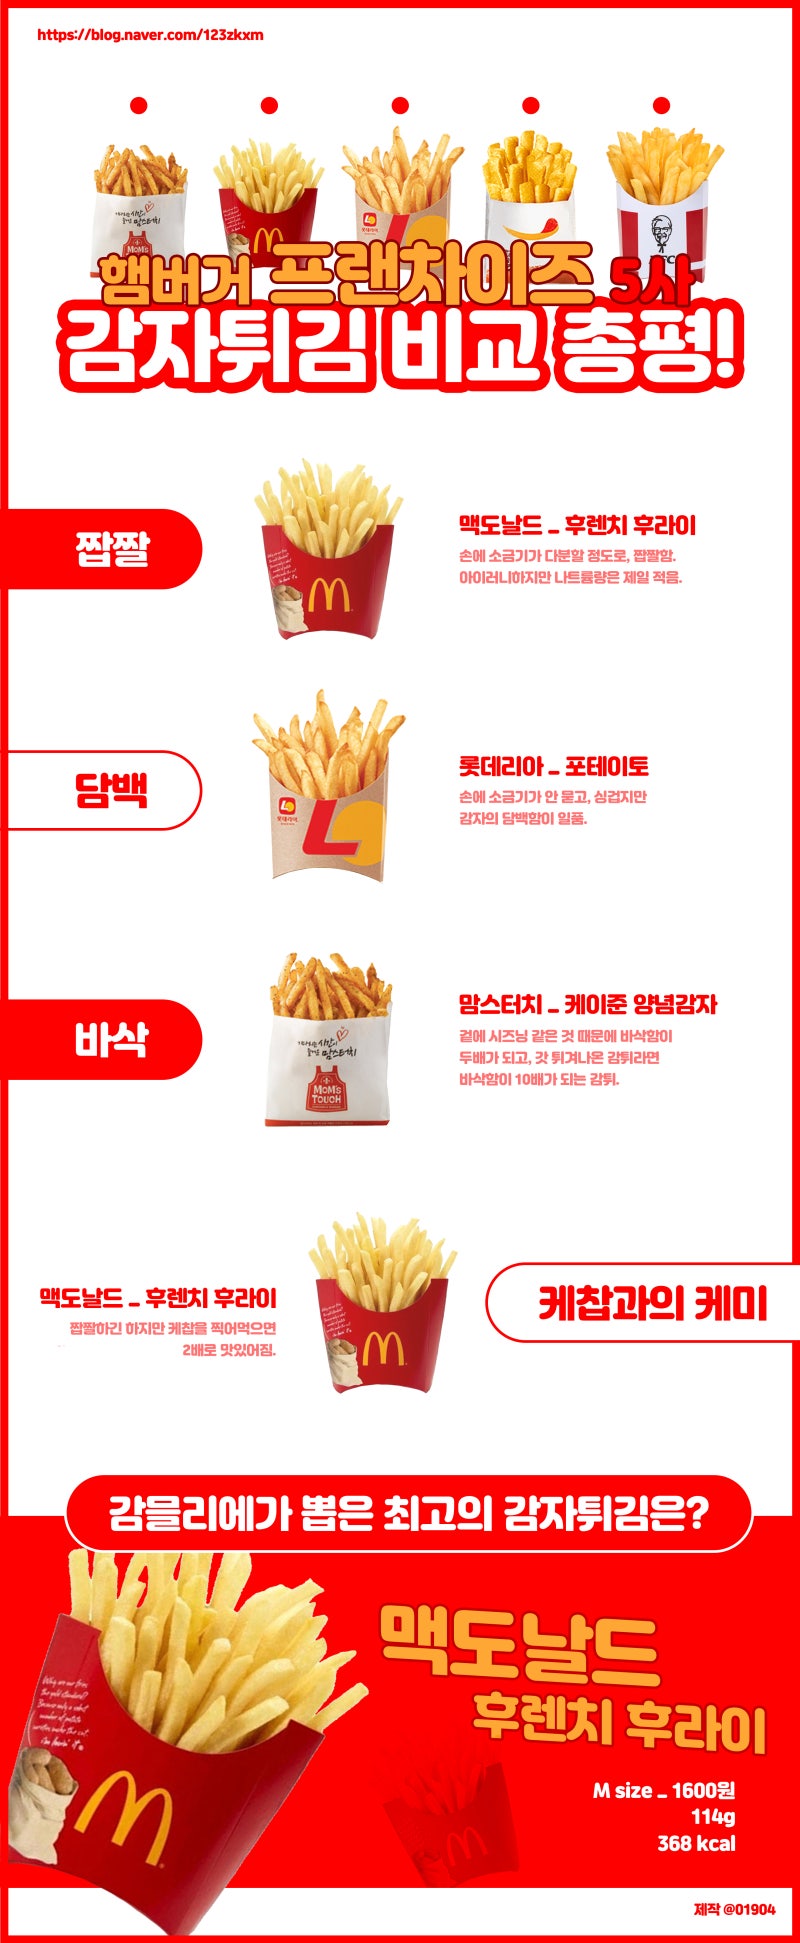 햄버거 패스트푸드점 5사 '감자튀김' 비교! (맥도날드/롯데리아/버거킹/맘스터치/Kfc) : 네이버 블로그